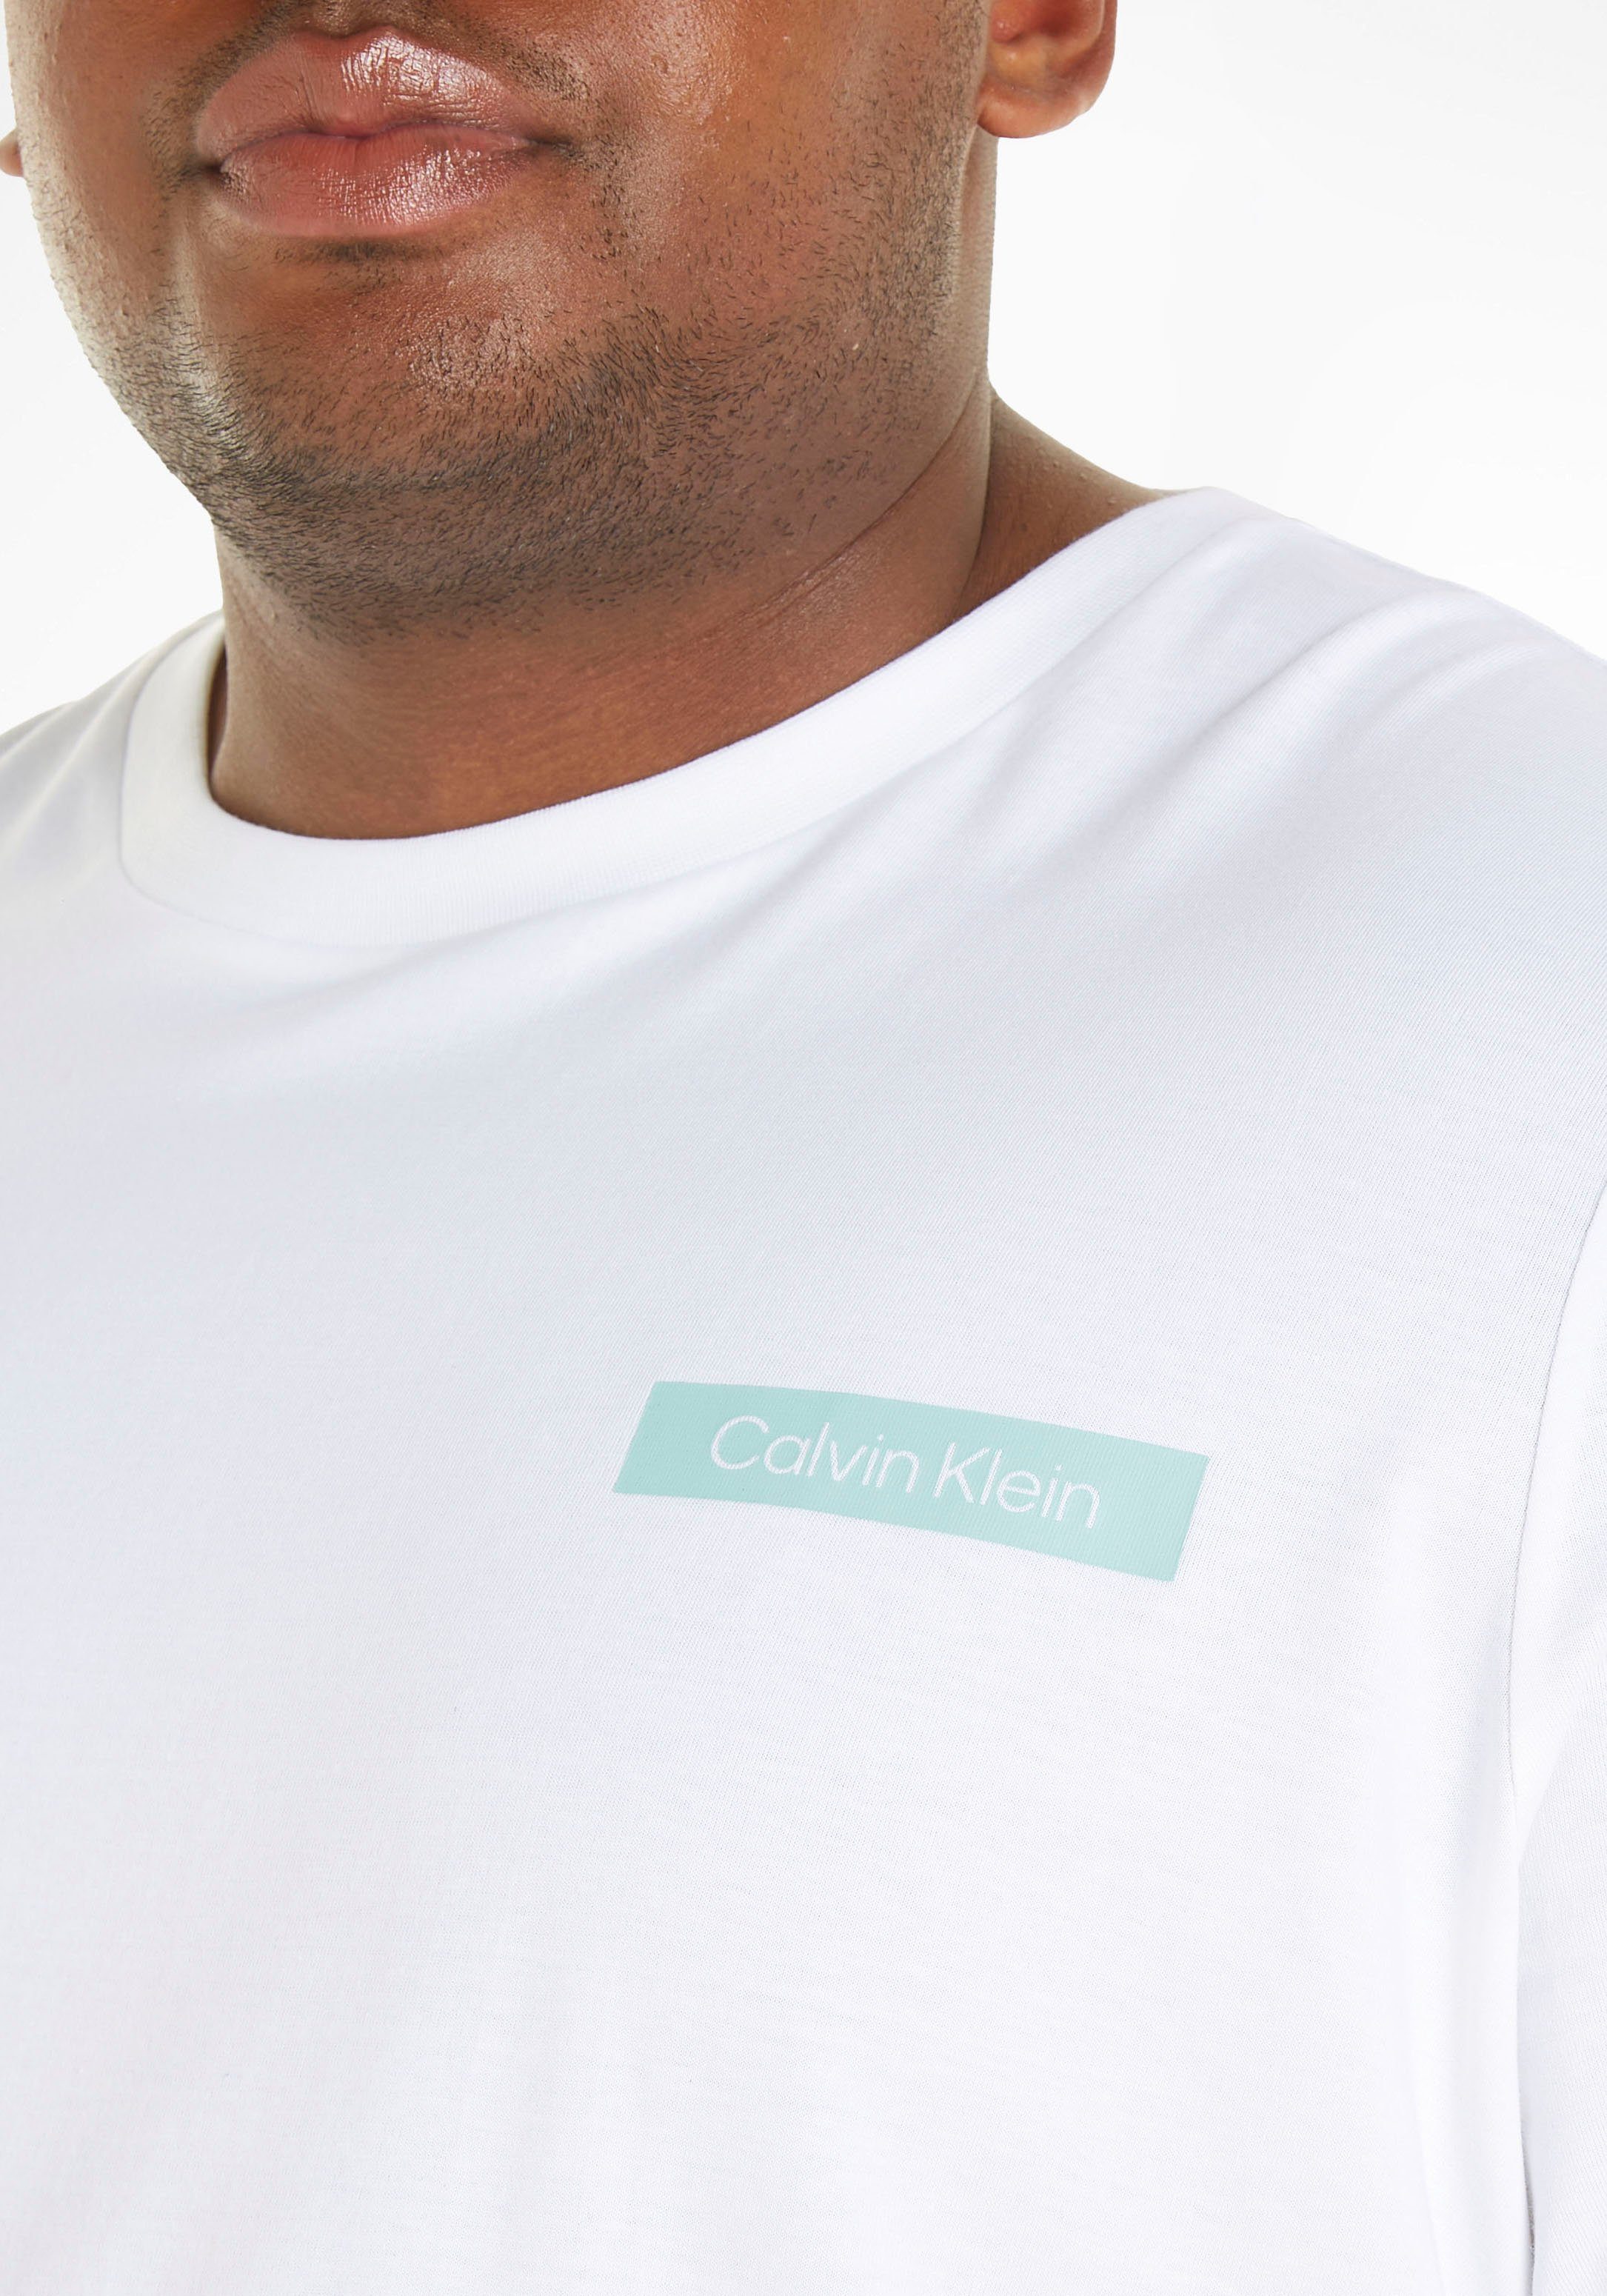 Brust Calvin T-Shirt auf Logoschriftzug der Klein Big&Tall mit weiß